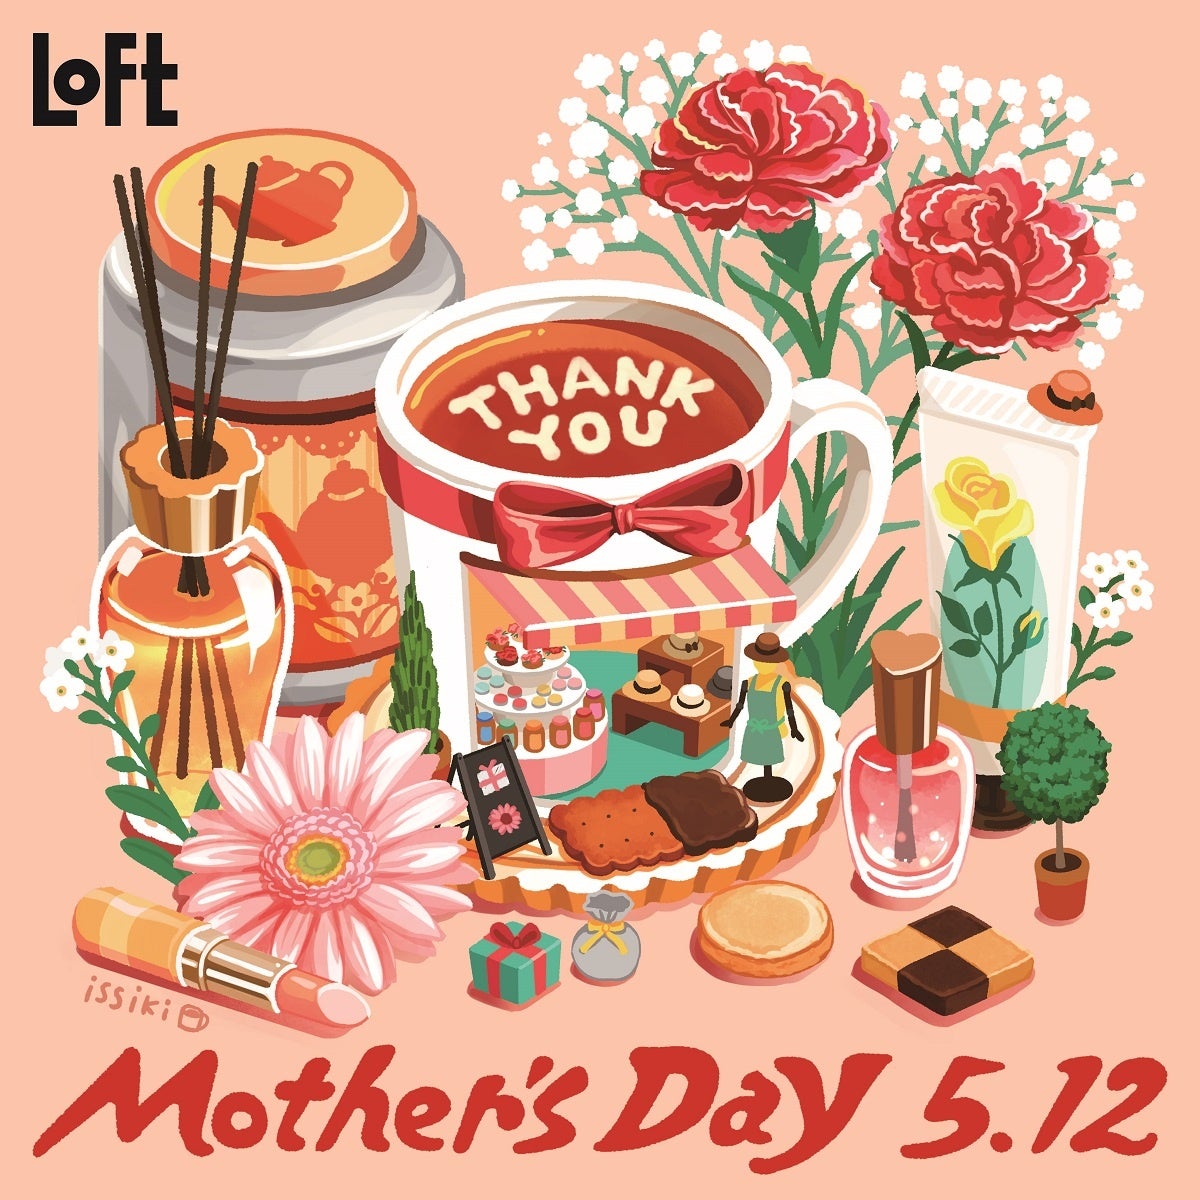 【ロフト】美顔器からスイーツまでさまざまな母の日ギフトがそろう「MOTHER’S DAY 5.12」